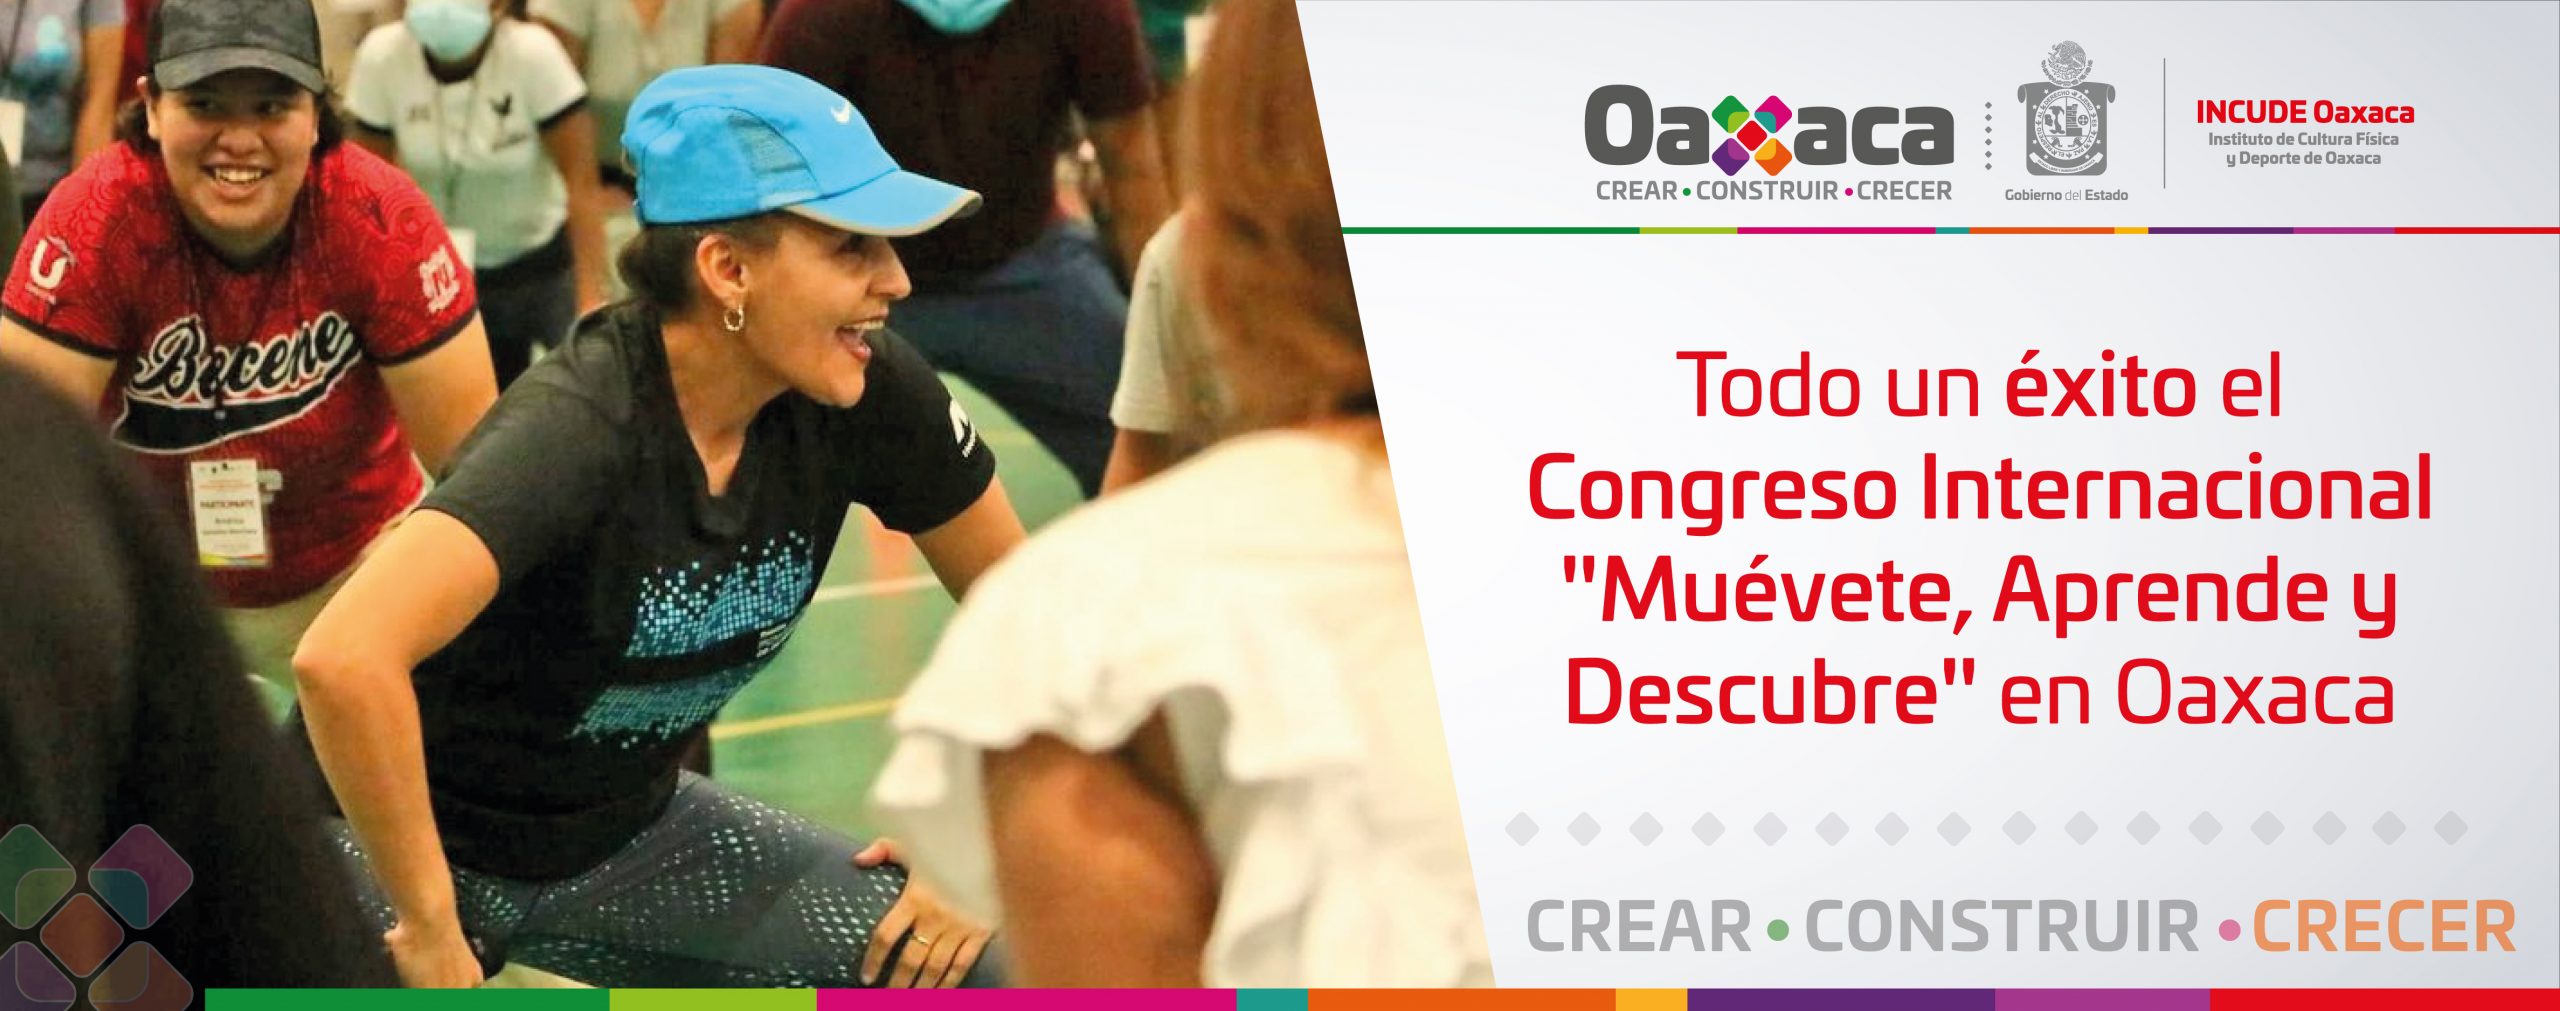 Todo un éxito el Congreso Internacional “Muévete, Aprende y Descubre” en Oaxaca